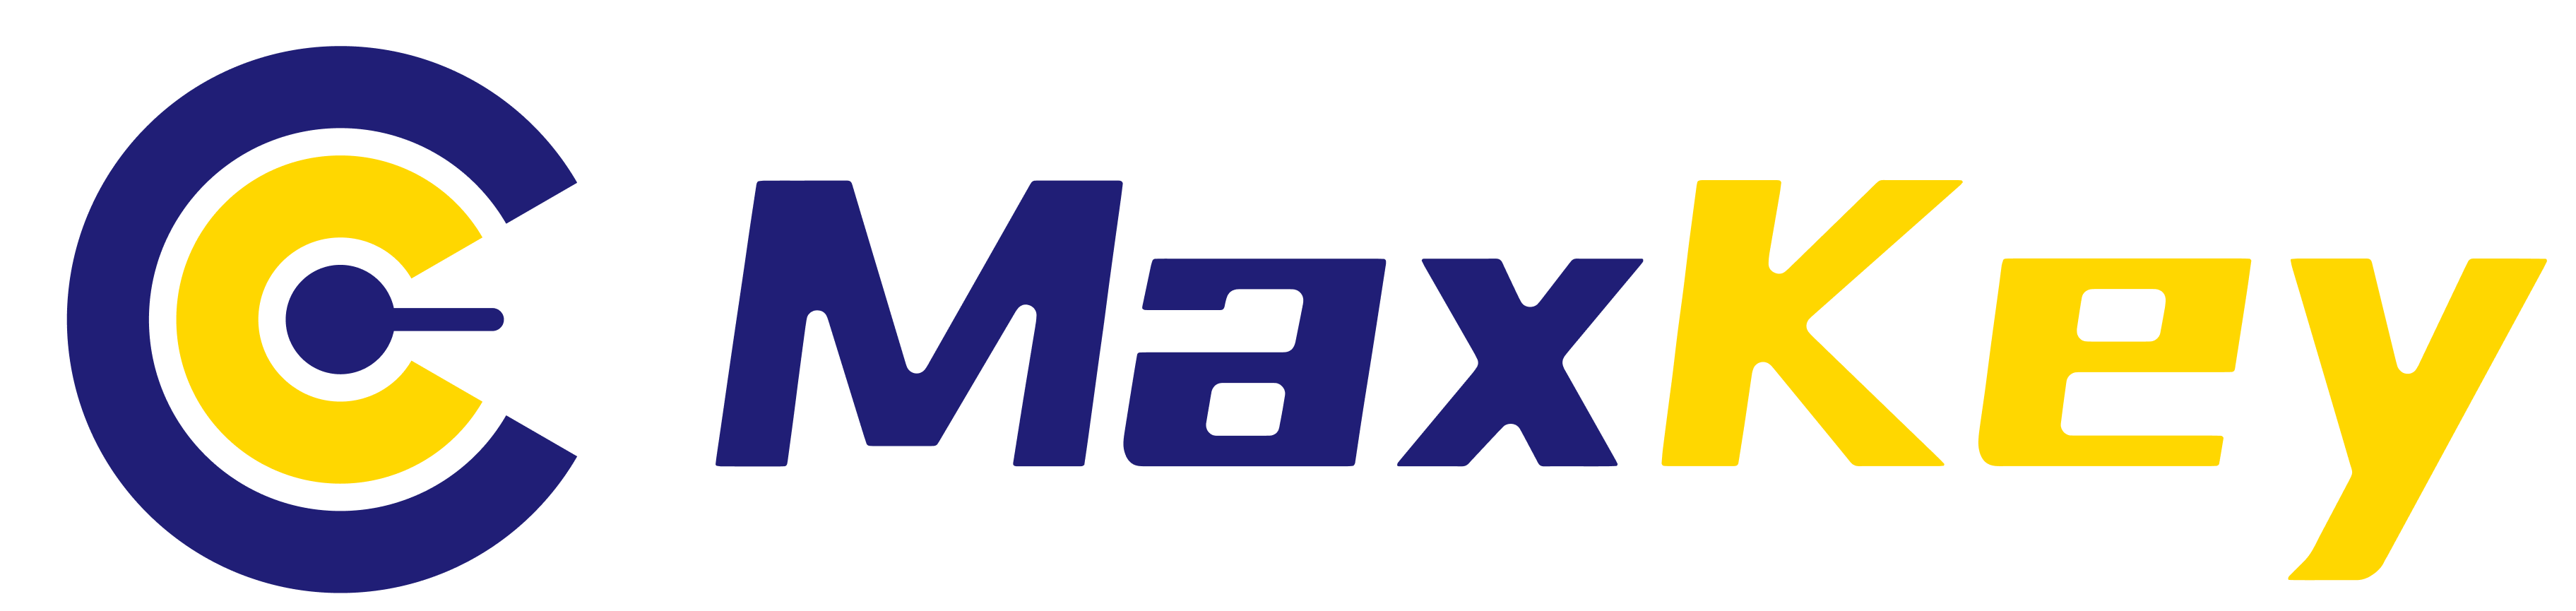 MaxKey-业界领先的IAM身份管理和认证产品